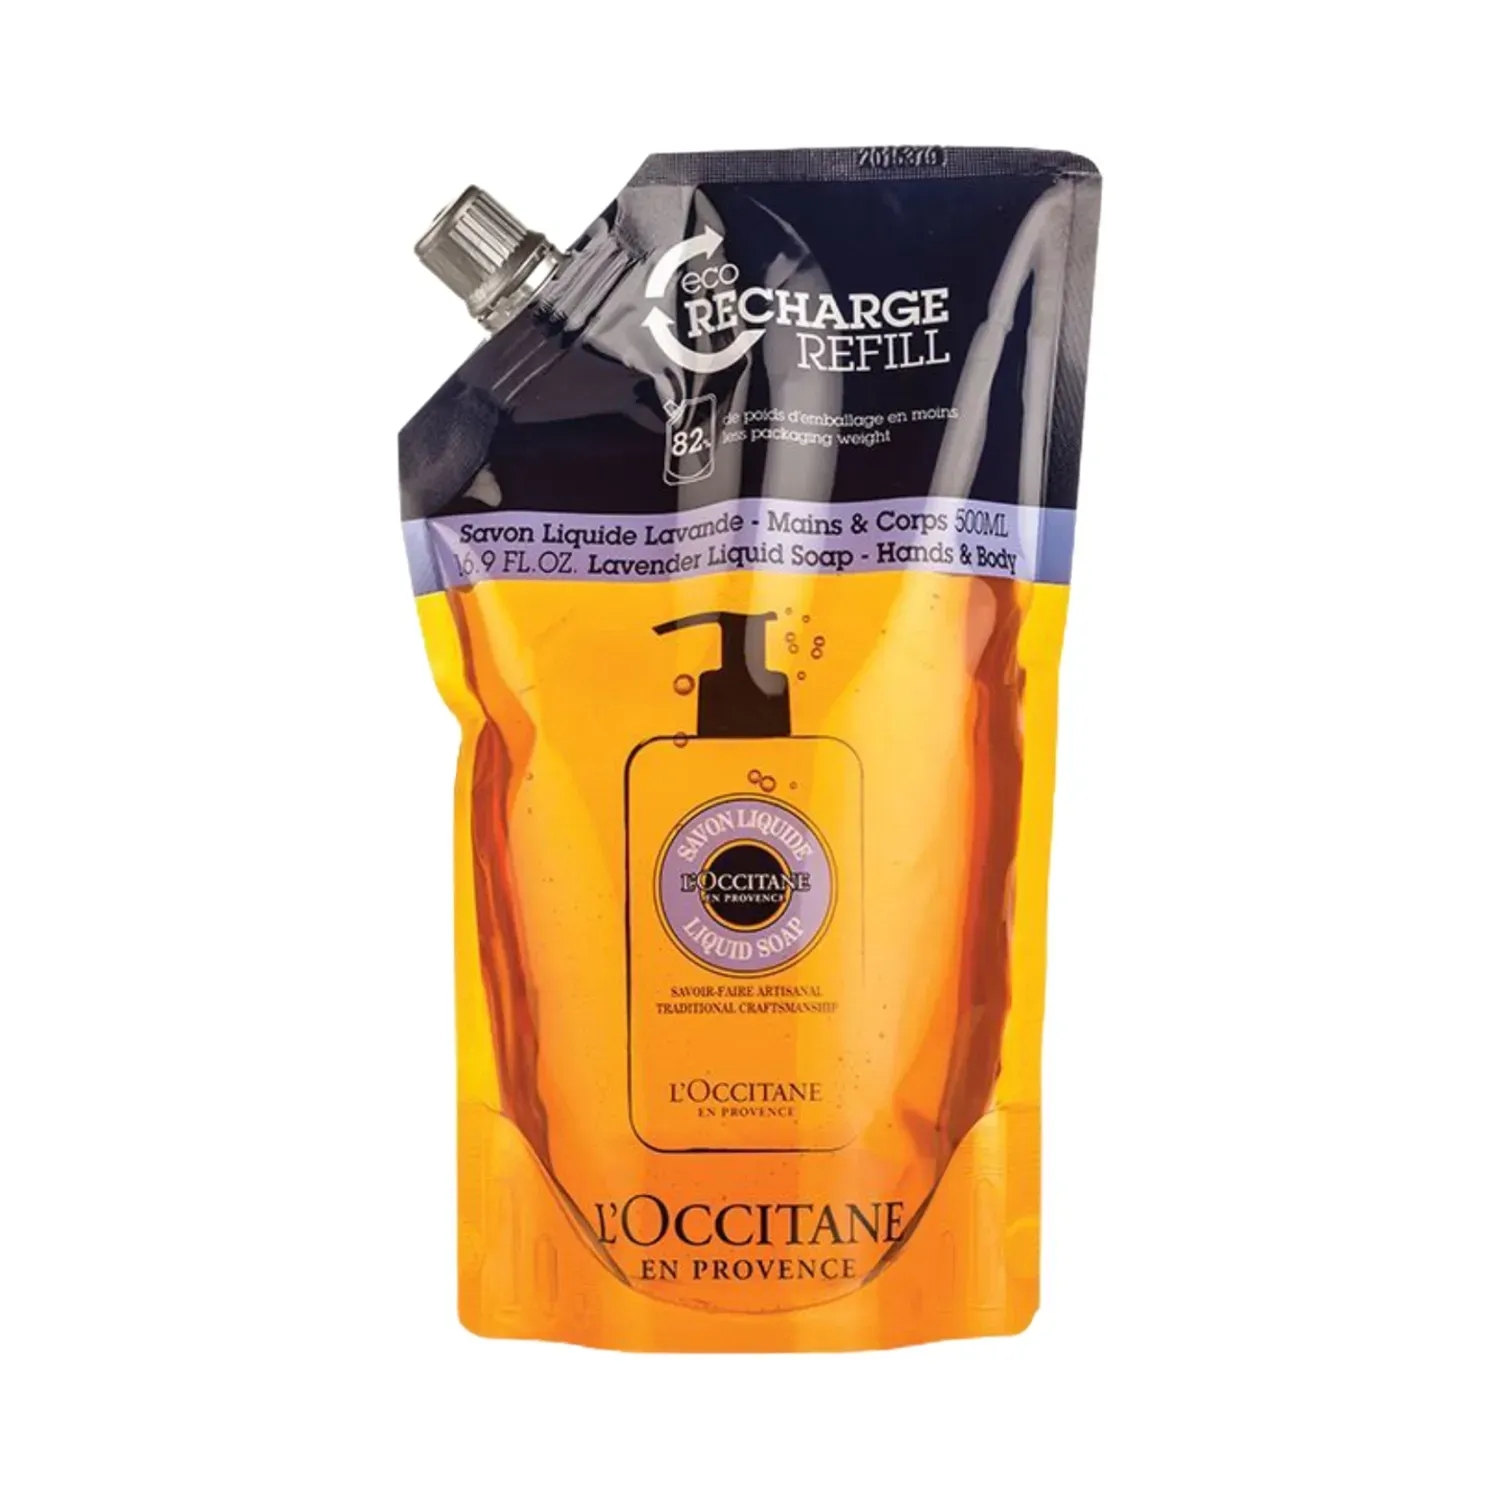 L'occitane | L'occitane Hands & Body Lavender Liquid Soap Refill - (500ml)